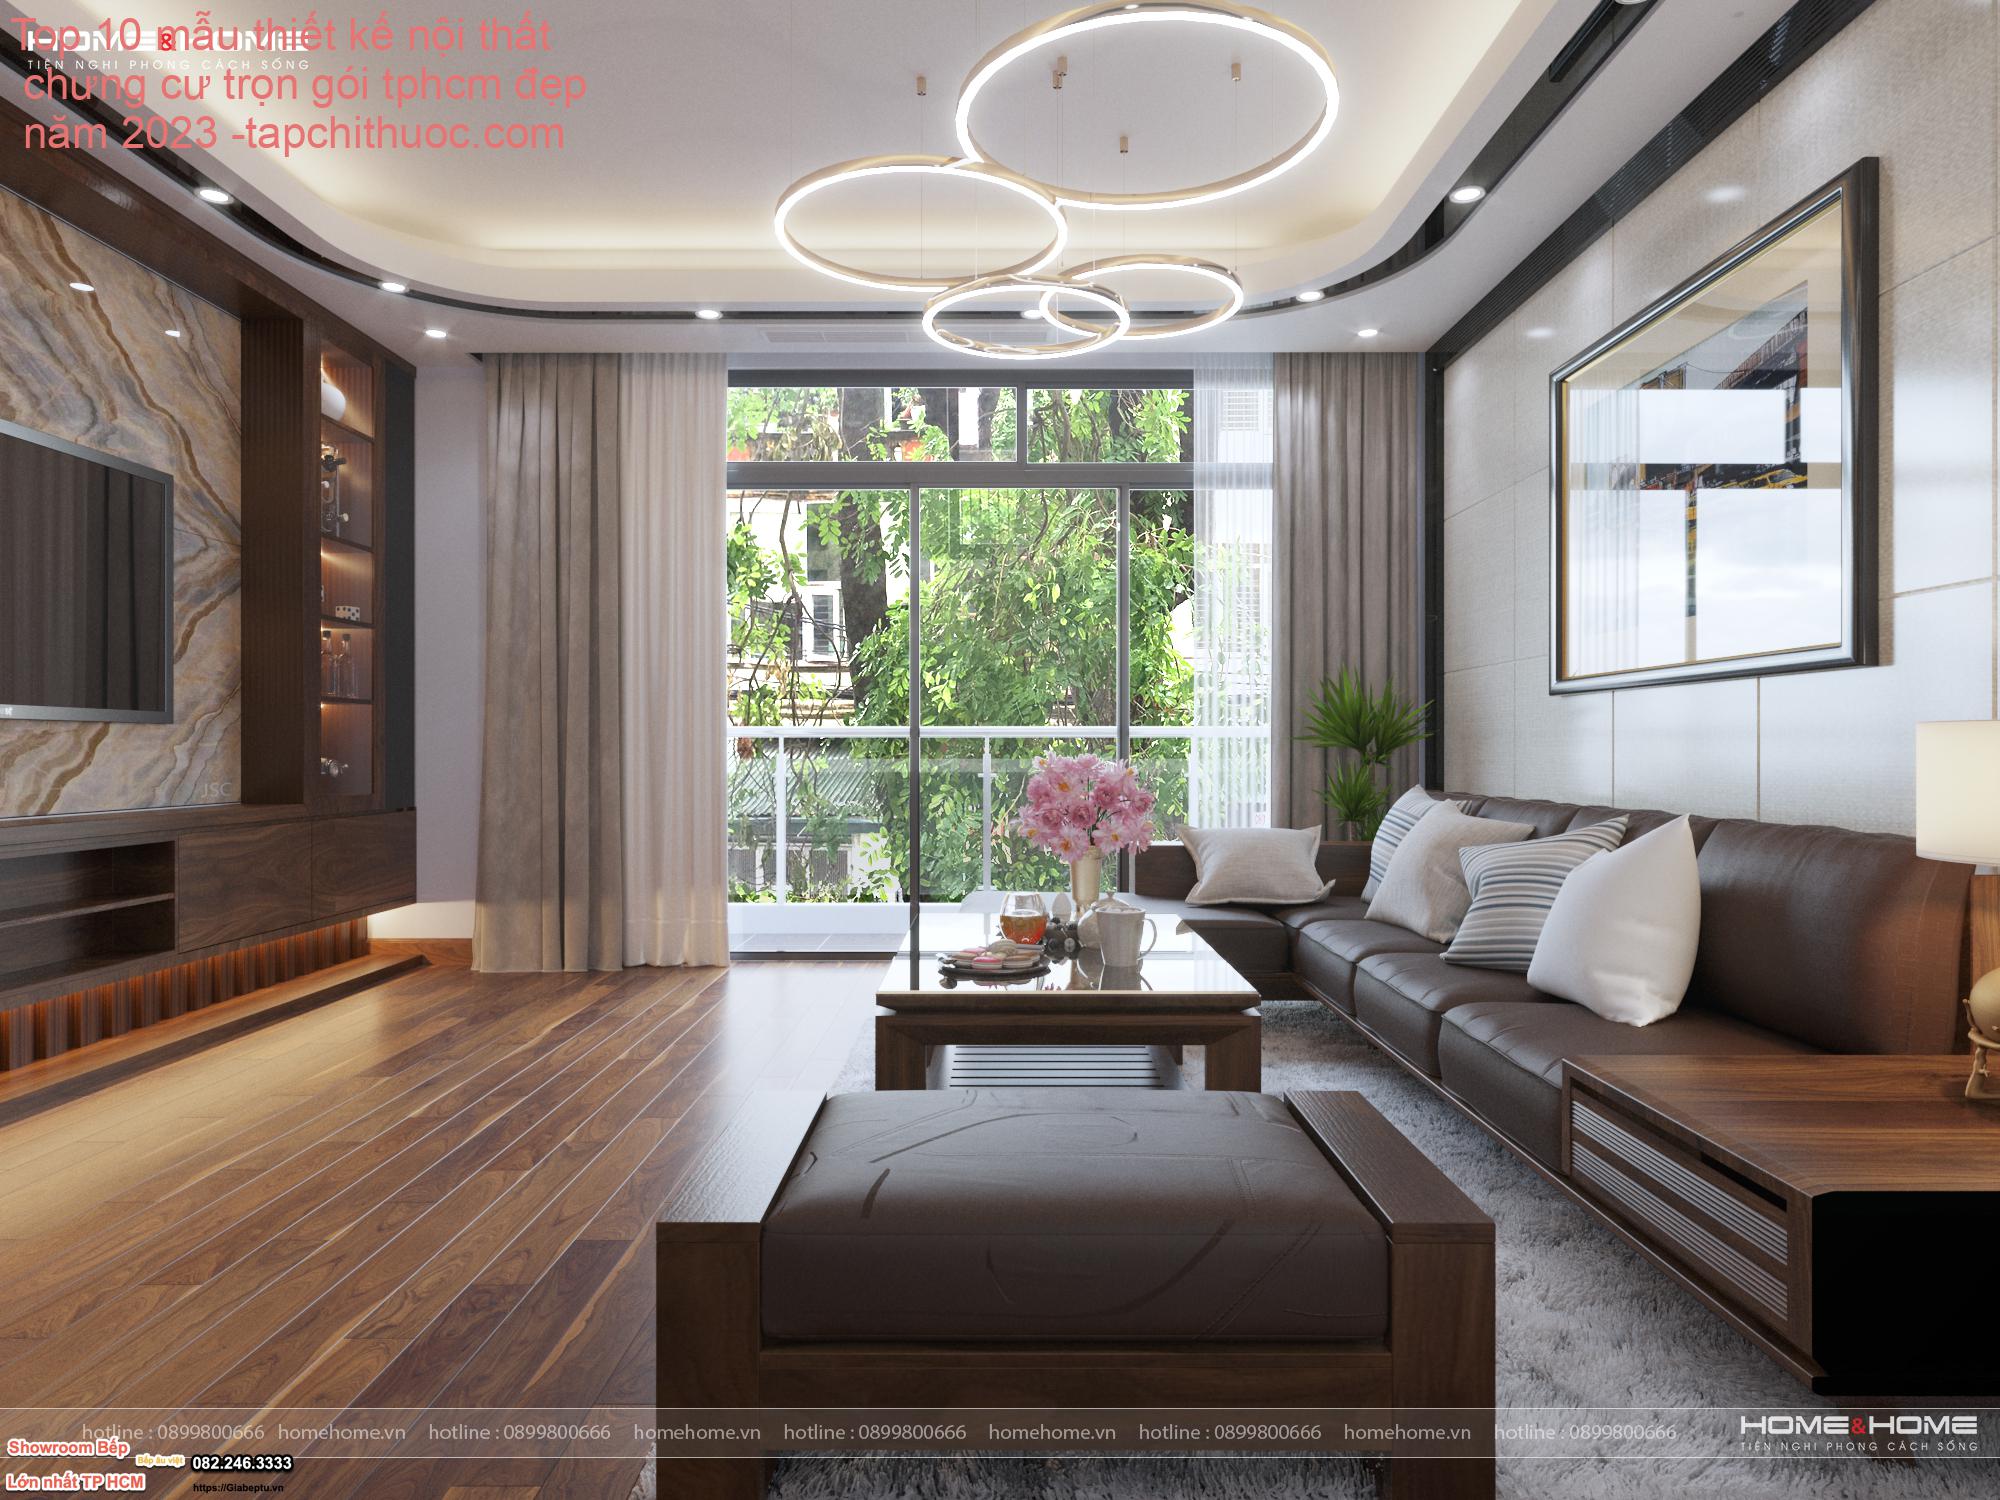 Top 10 mẫu thiết kế nội thất chưng cư trọn gói tphcm đẹp năm 2023